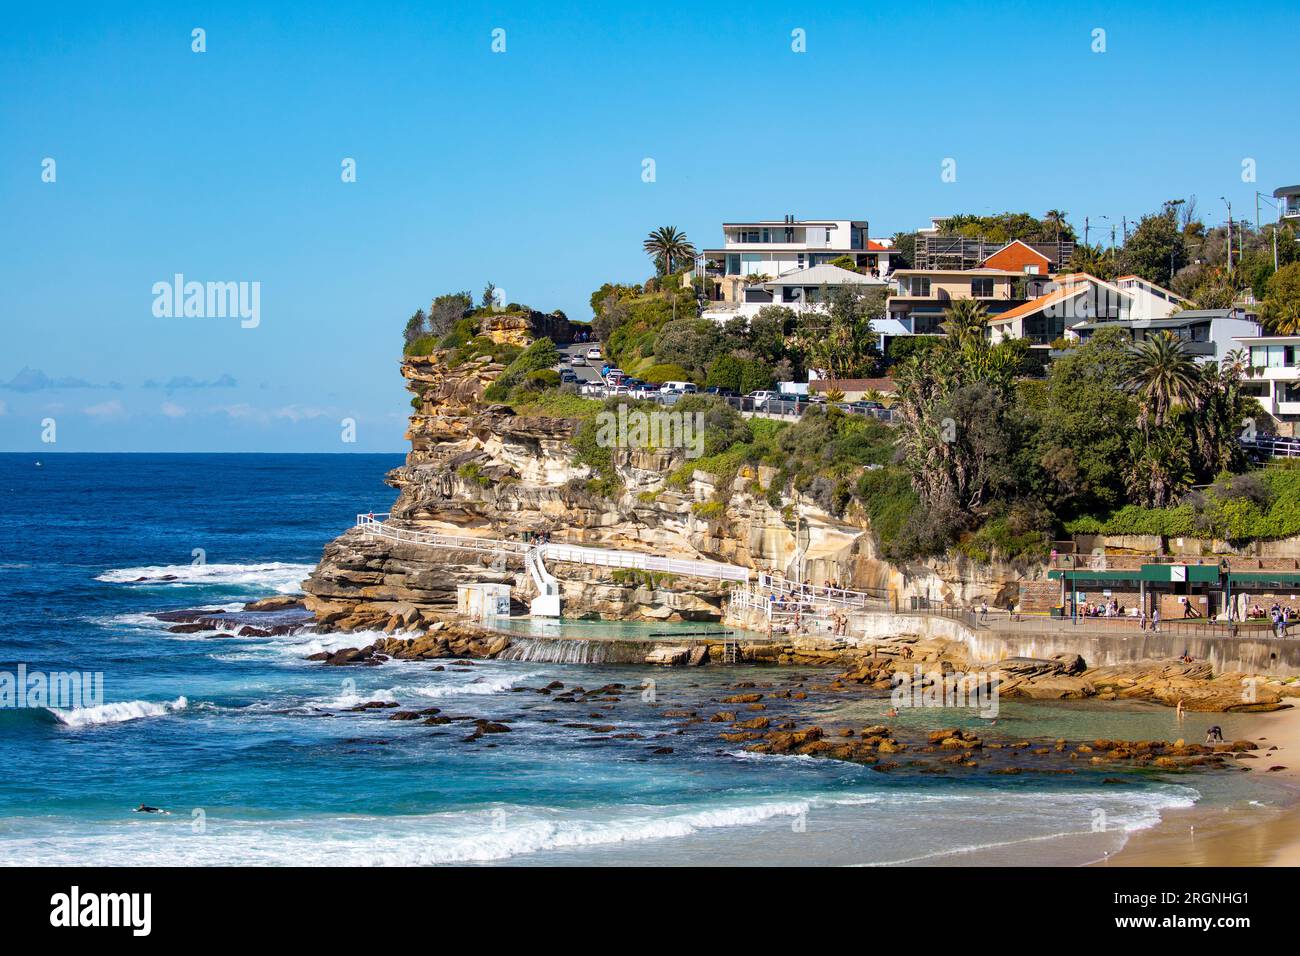 Bronte Beach e Coastline, famosa spiaggia nei sobborghi orientali di Sydney, NSW, Australia in una giornata d'inverno nel cielo blu nel 2023, spiaggia in gran parte deserta Foto Stock